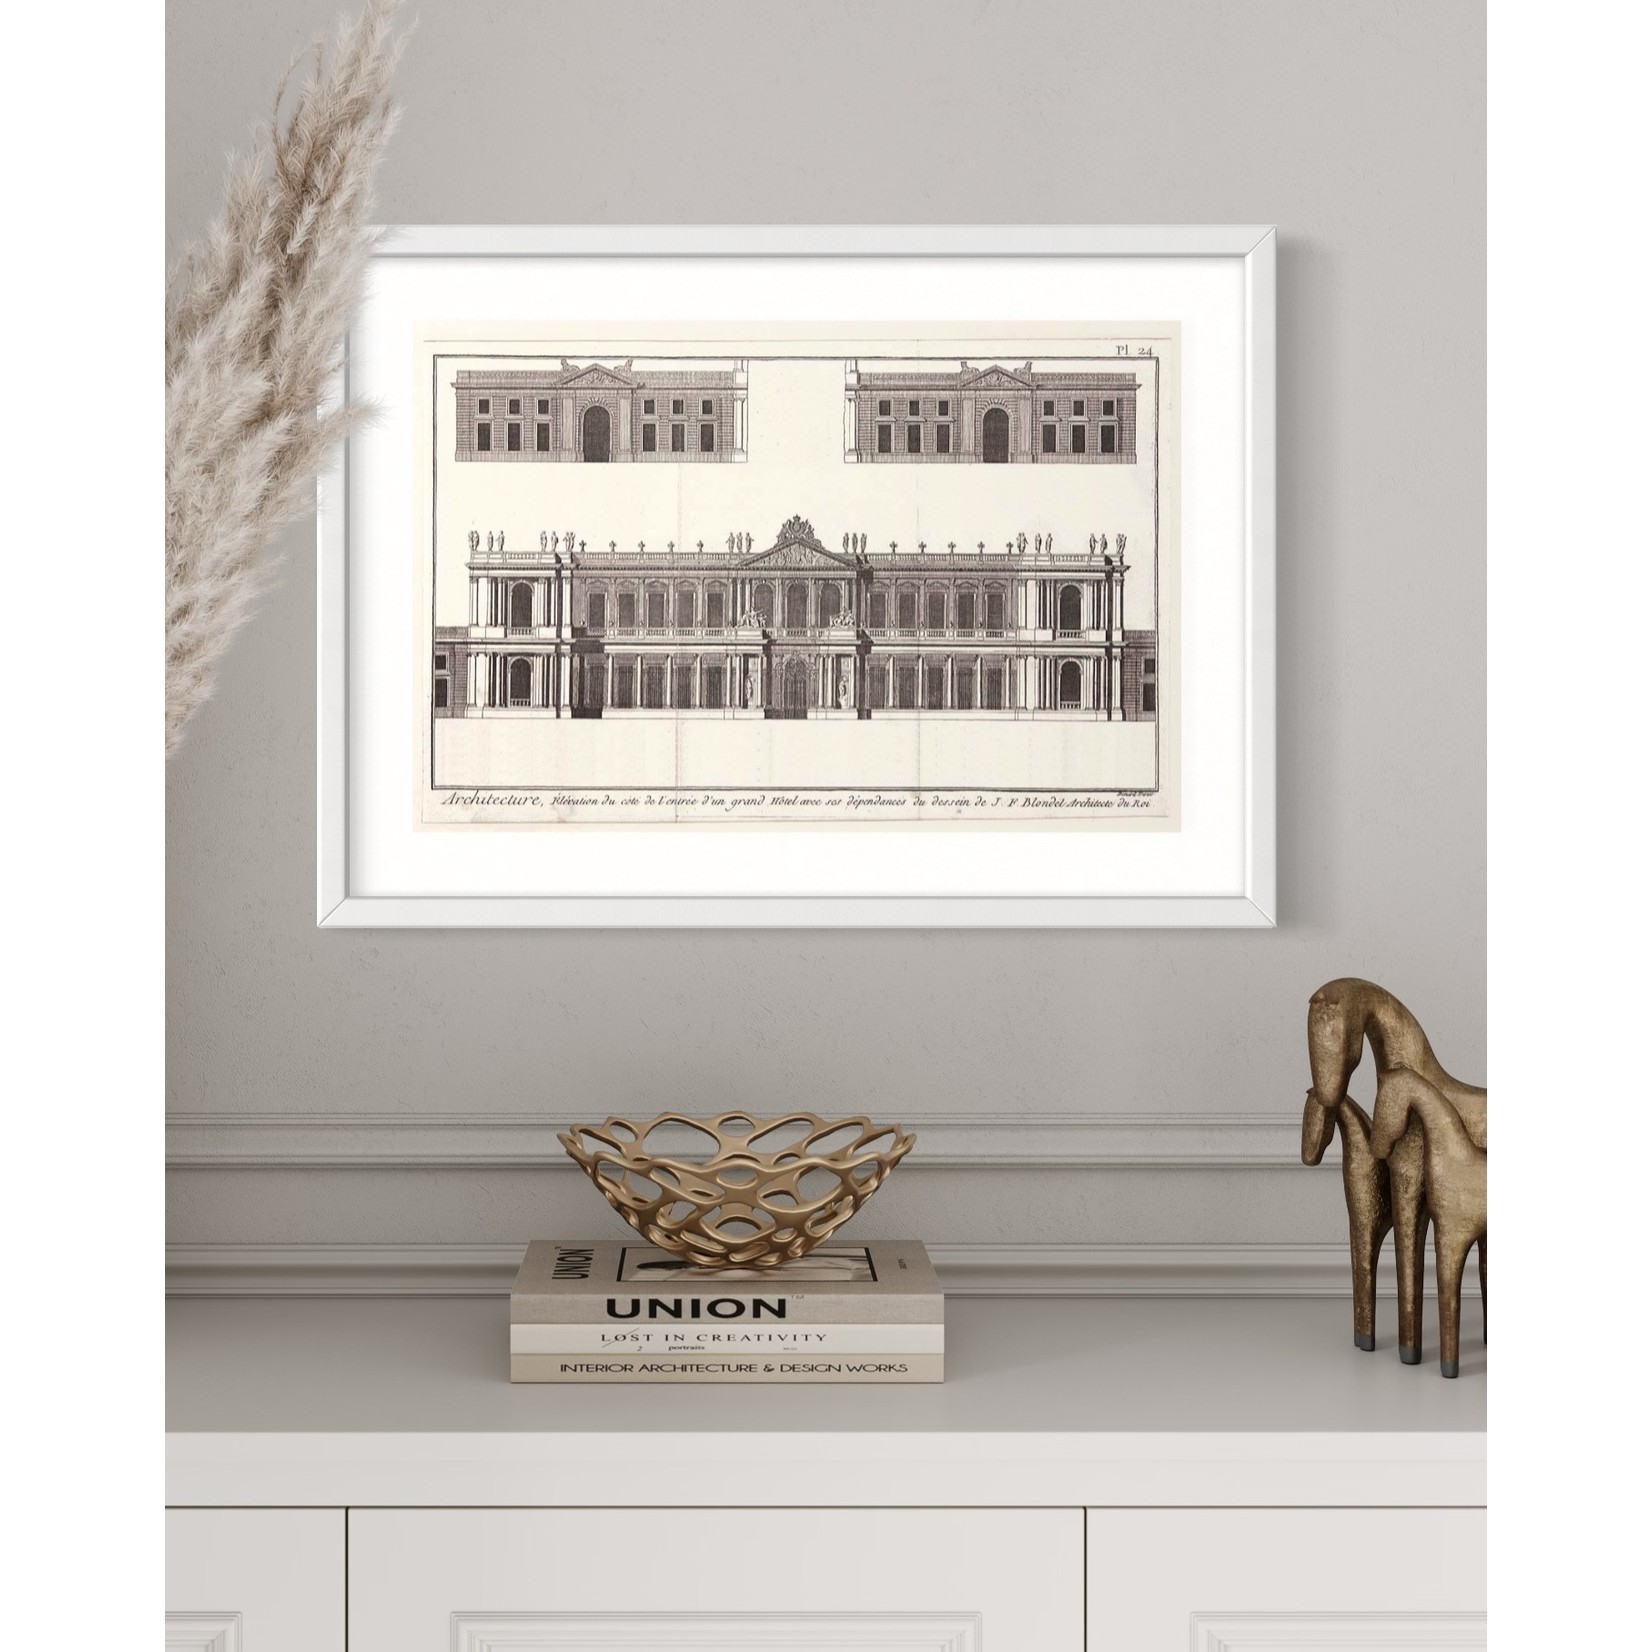 Framed Print on Rag Paper: Elevation du Grand Hotel de Paris by J.F. Blondel, Architect of the King.